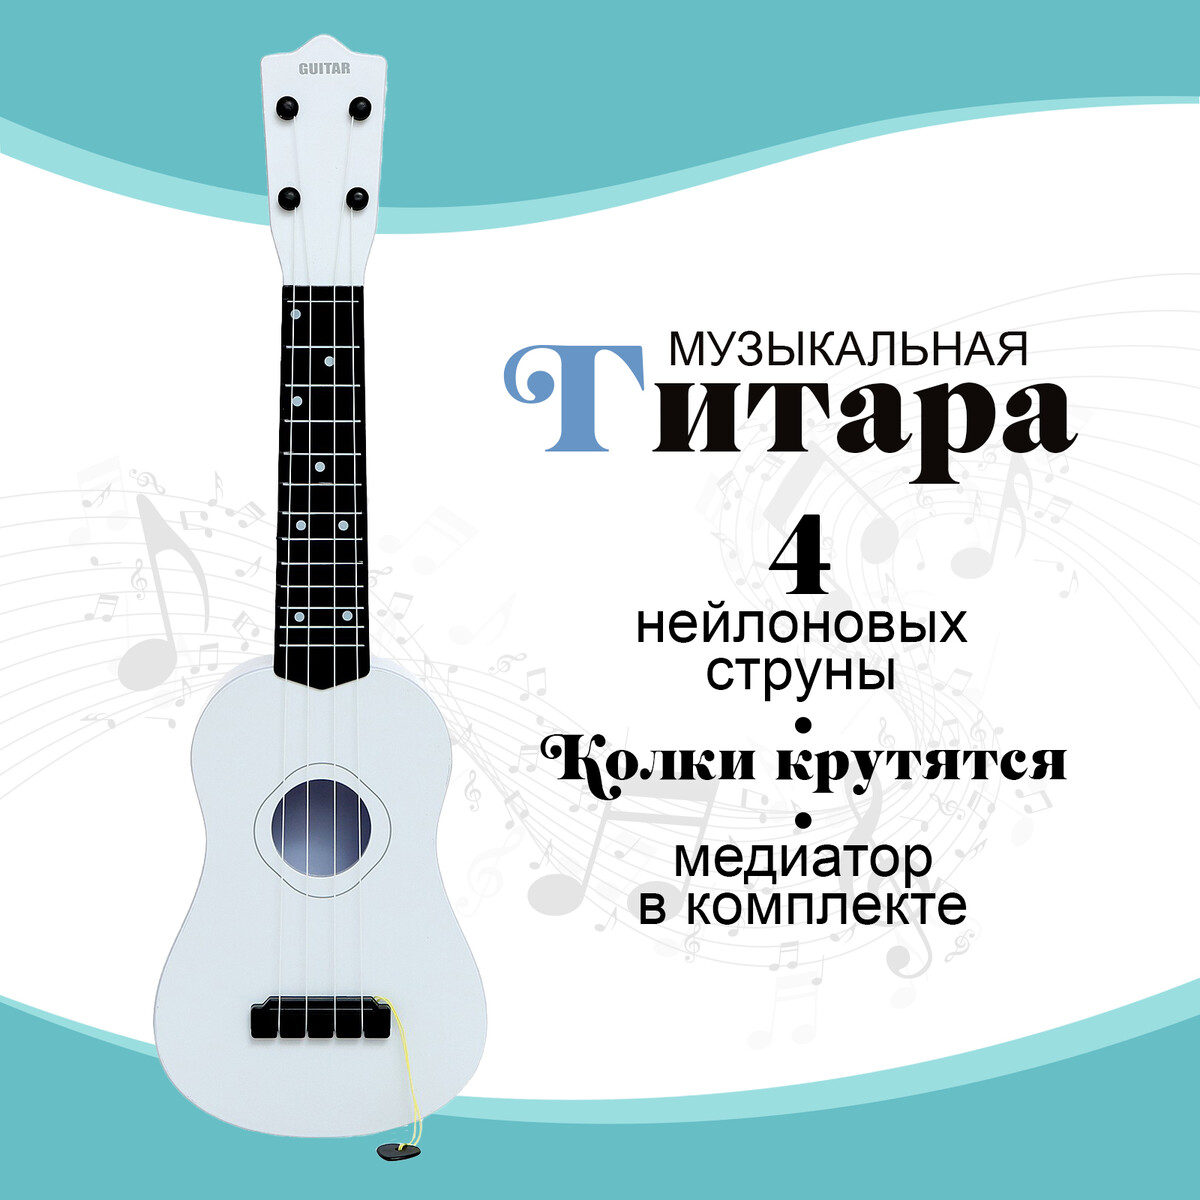 Игрушка музыкальная - гитара игрушка музыкальная гитара классическая 64 × 22 × 10 см